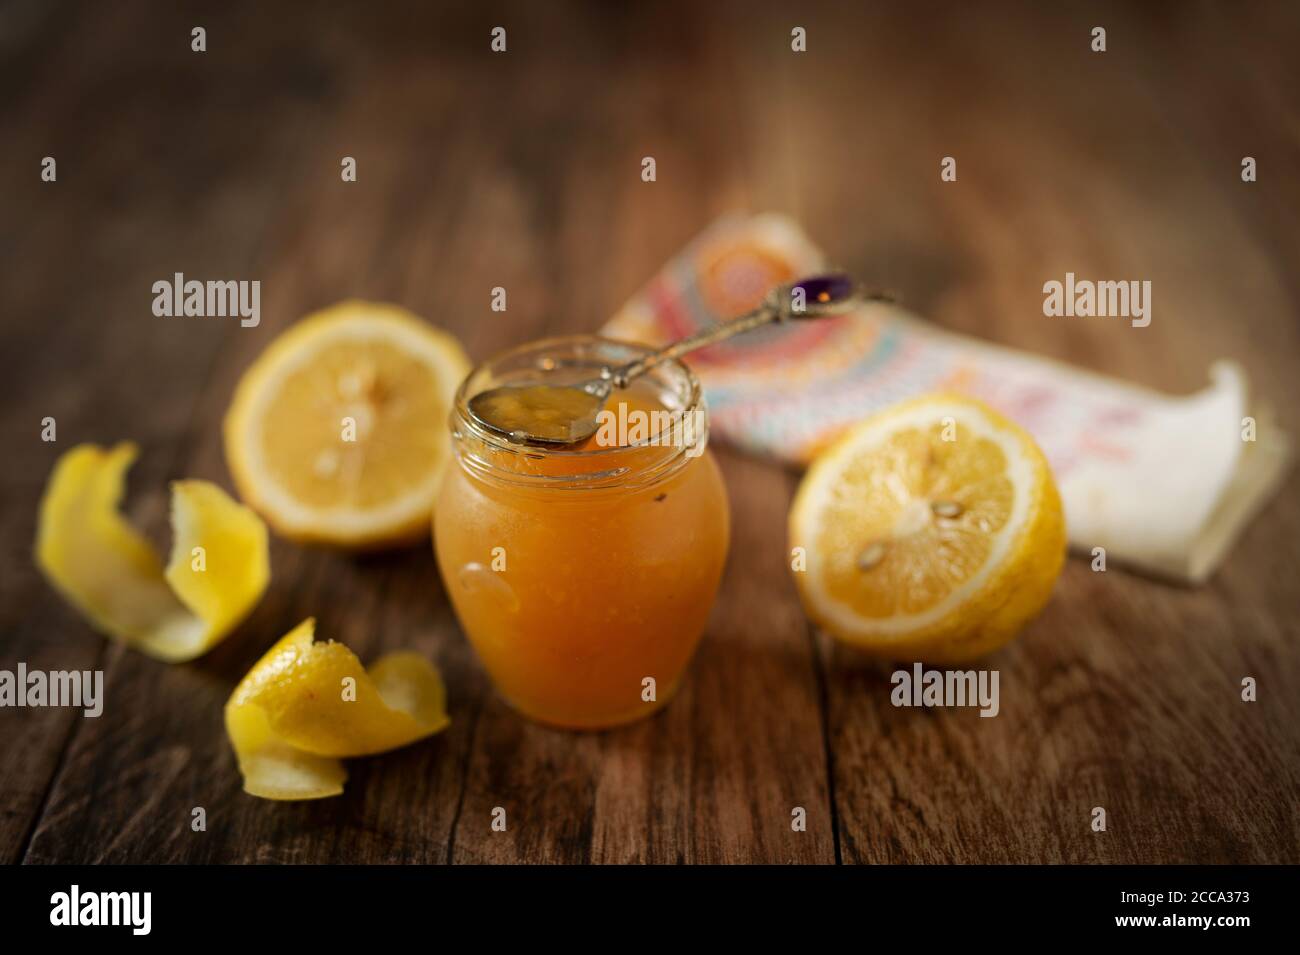 Confiture de citron/marmelade faite maison à base de citrons frais. Banque D'Images